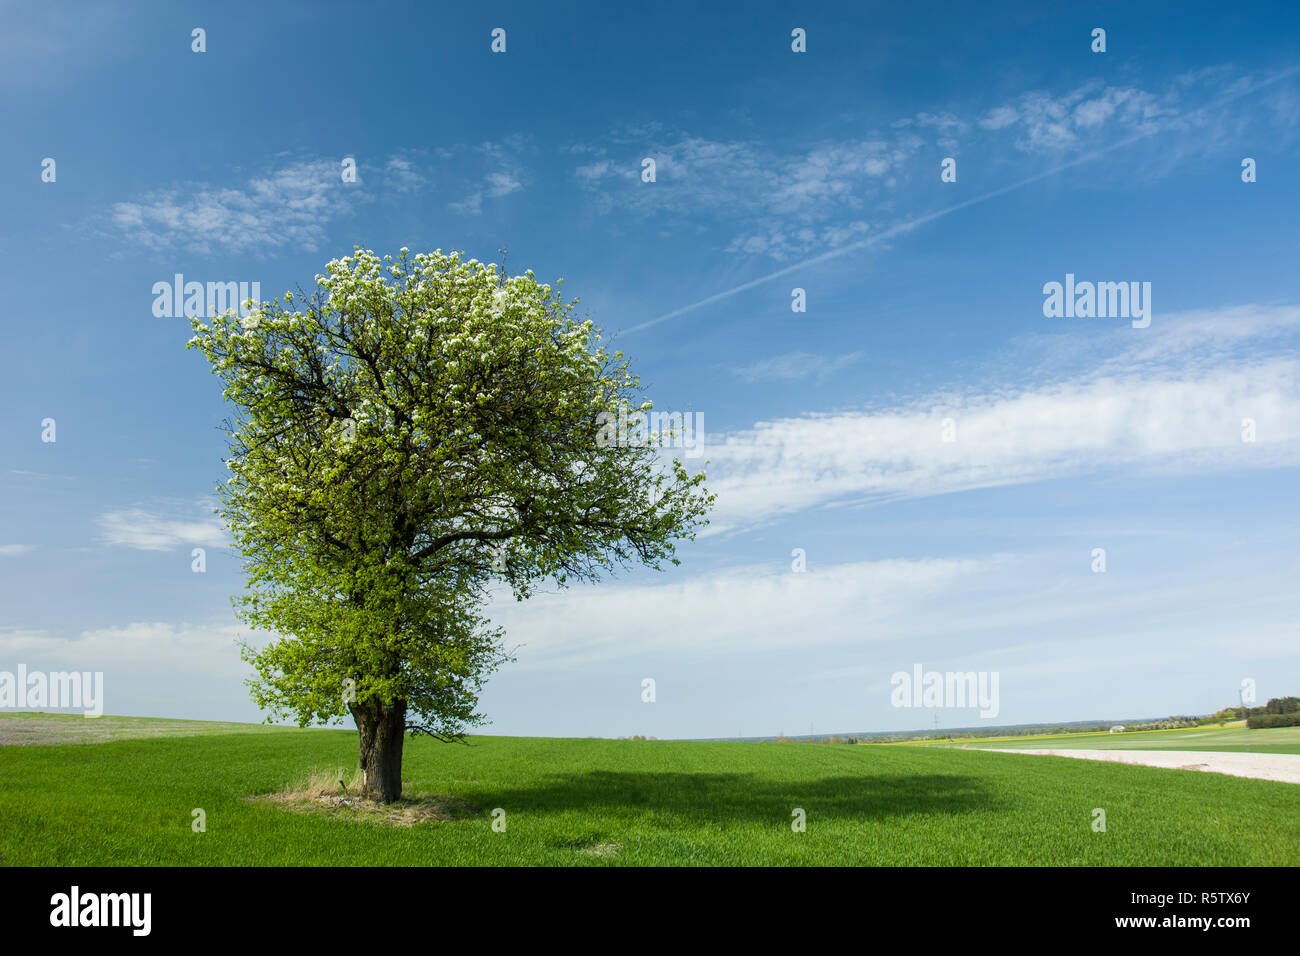 Große blühende Laubbaum in ein grünes Feld, Horizont und Wolken am blauen Himmel Stockfoto